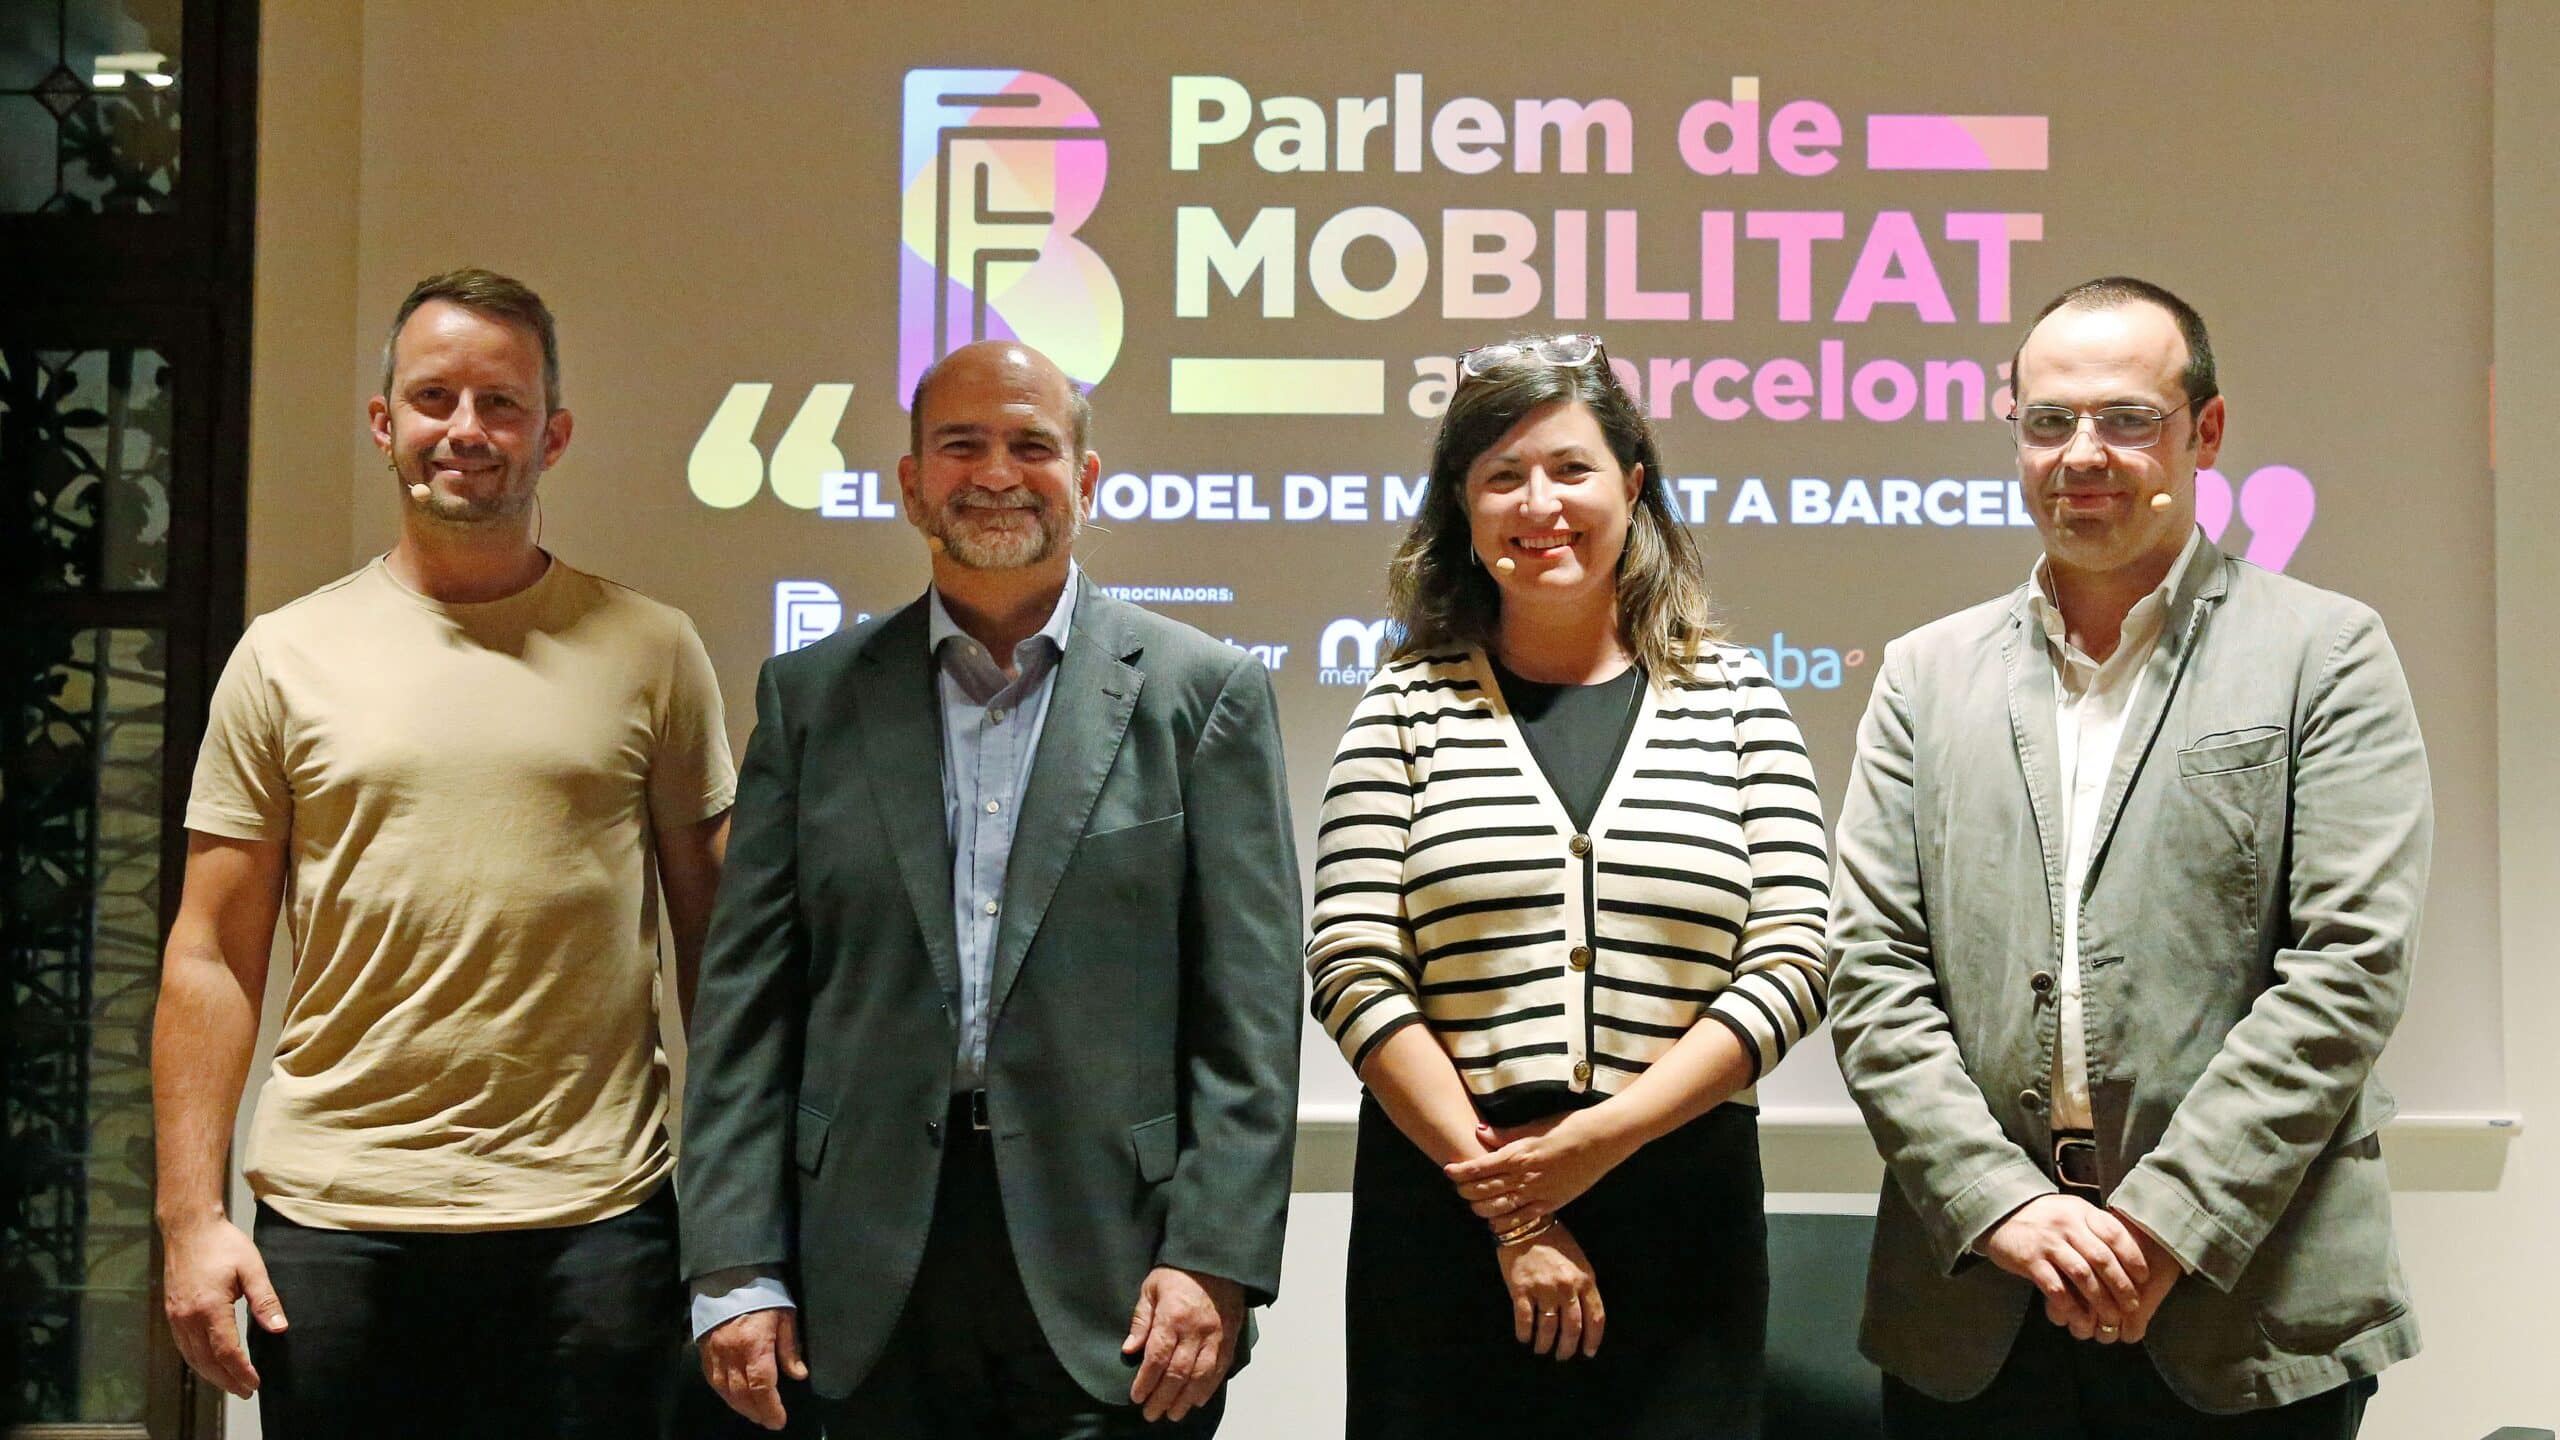 Reformular les superilles i un projecte real d’intermodalitat, prioritats pel pla de mobilitat de Barcelona